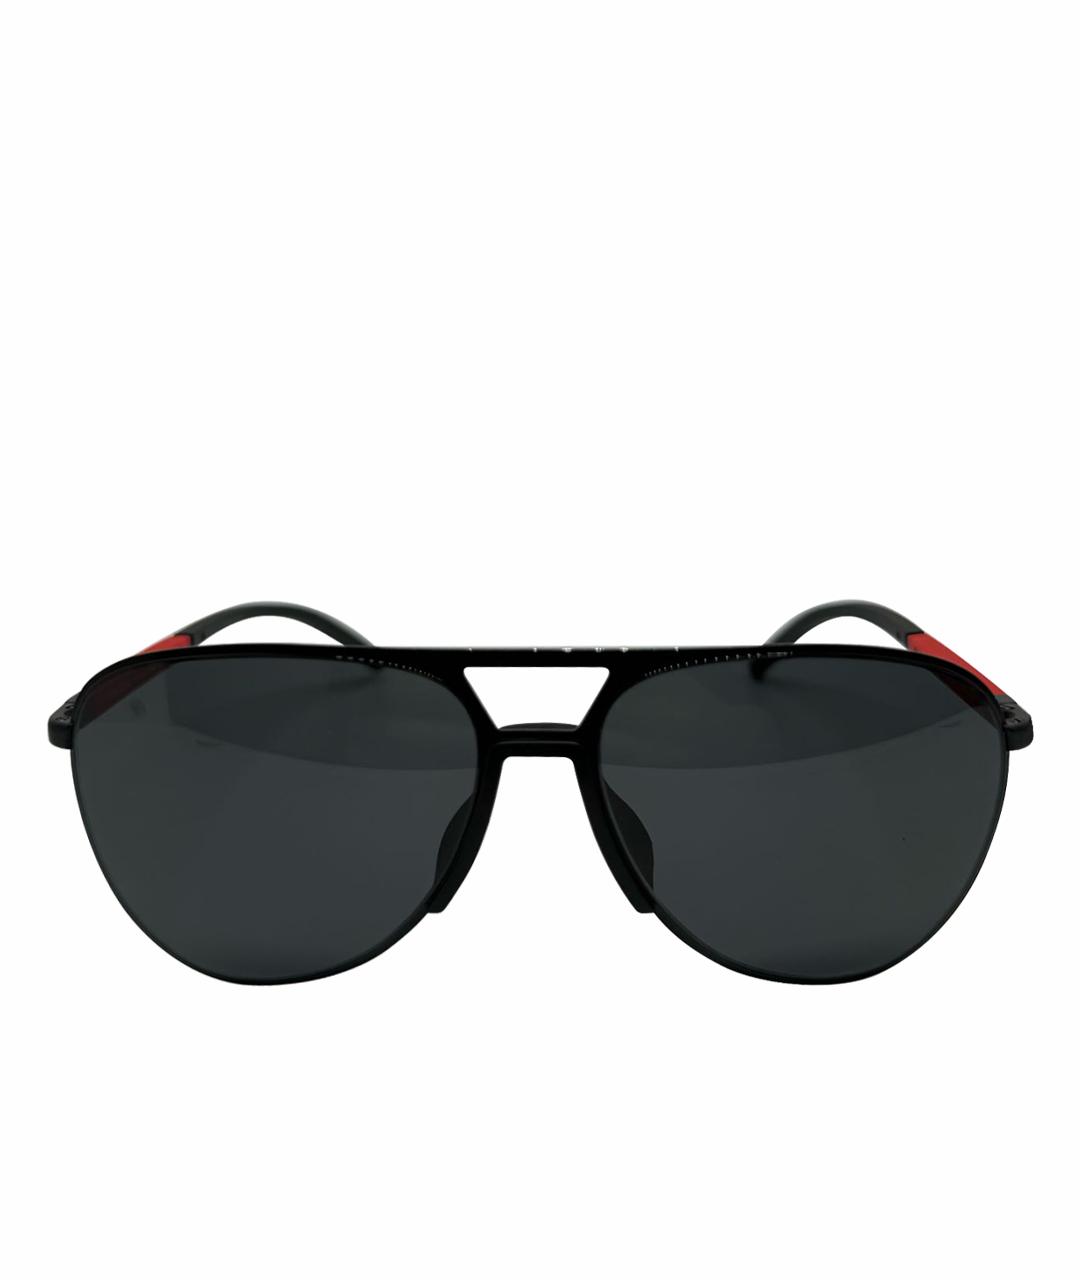 PRADA Черные металлические солнцезащитные очки, фото 1